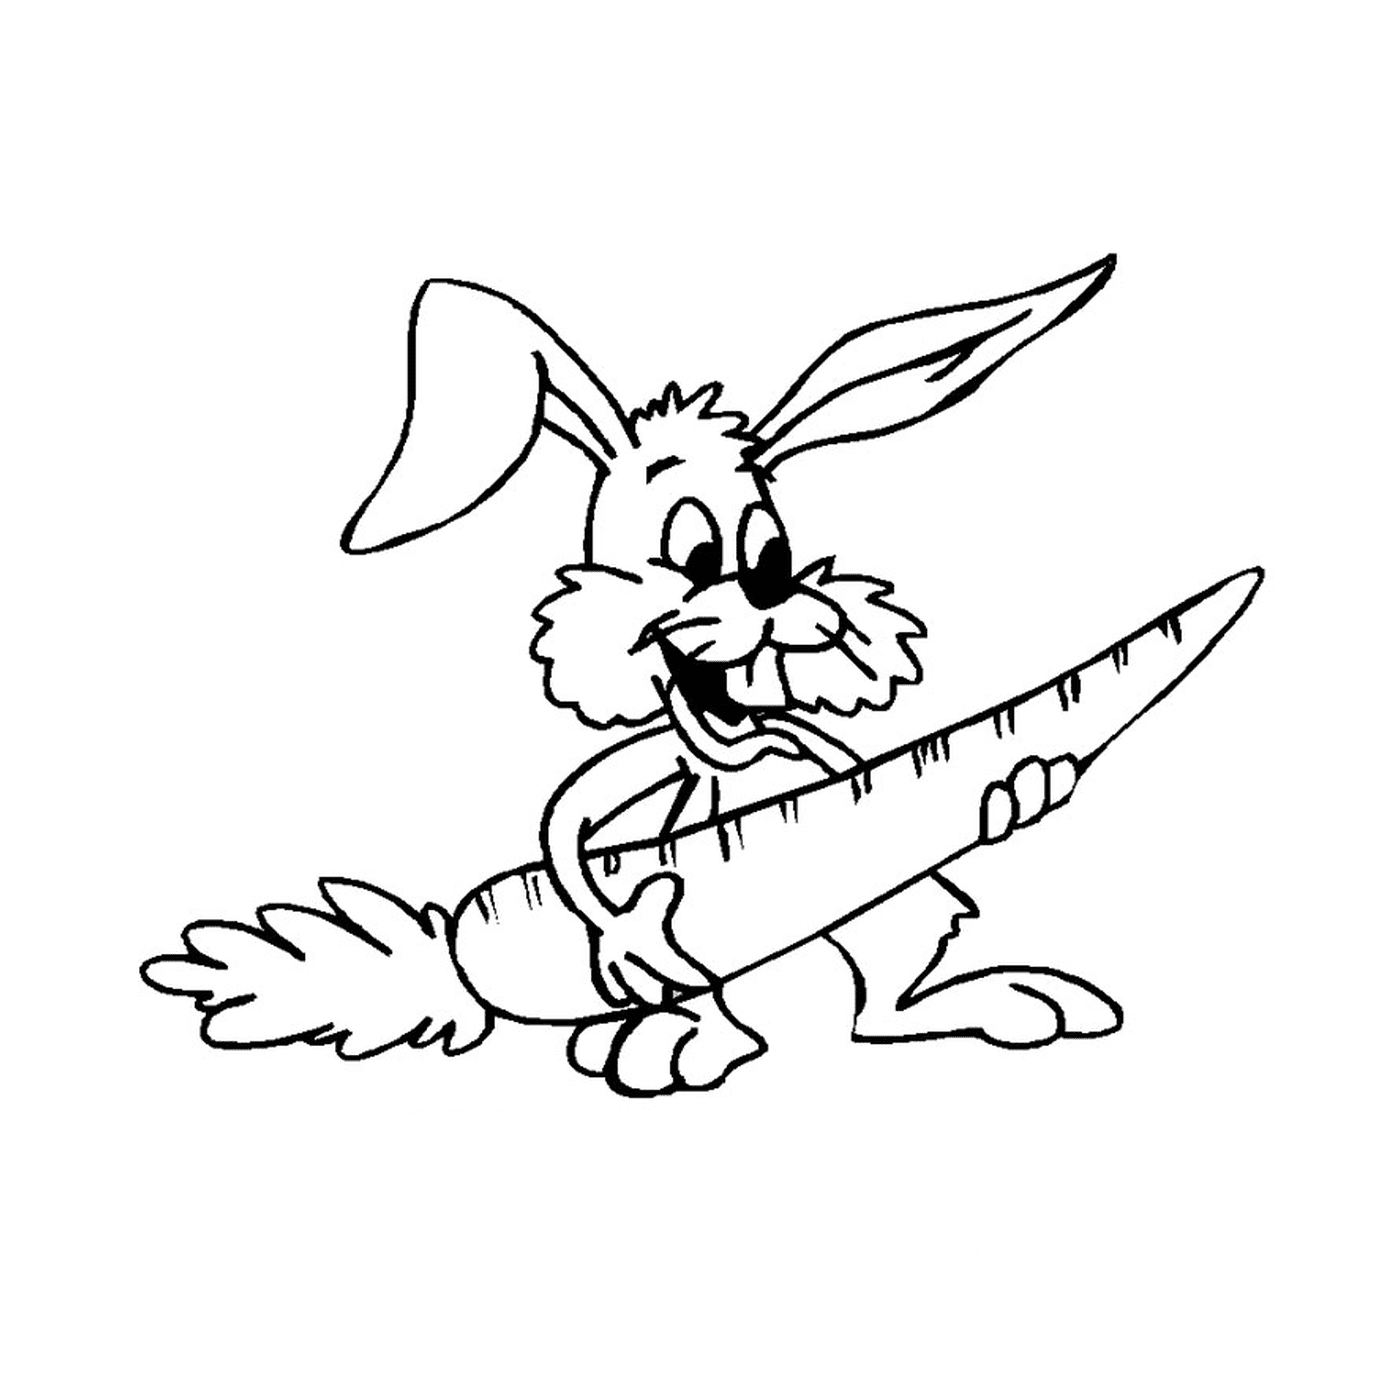  Rabbit holding carrot 